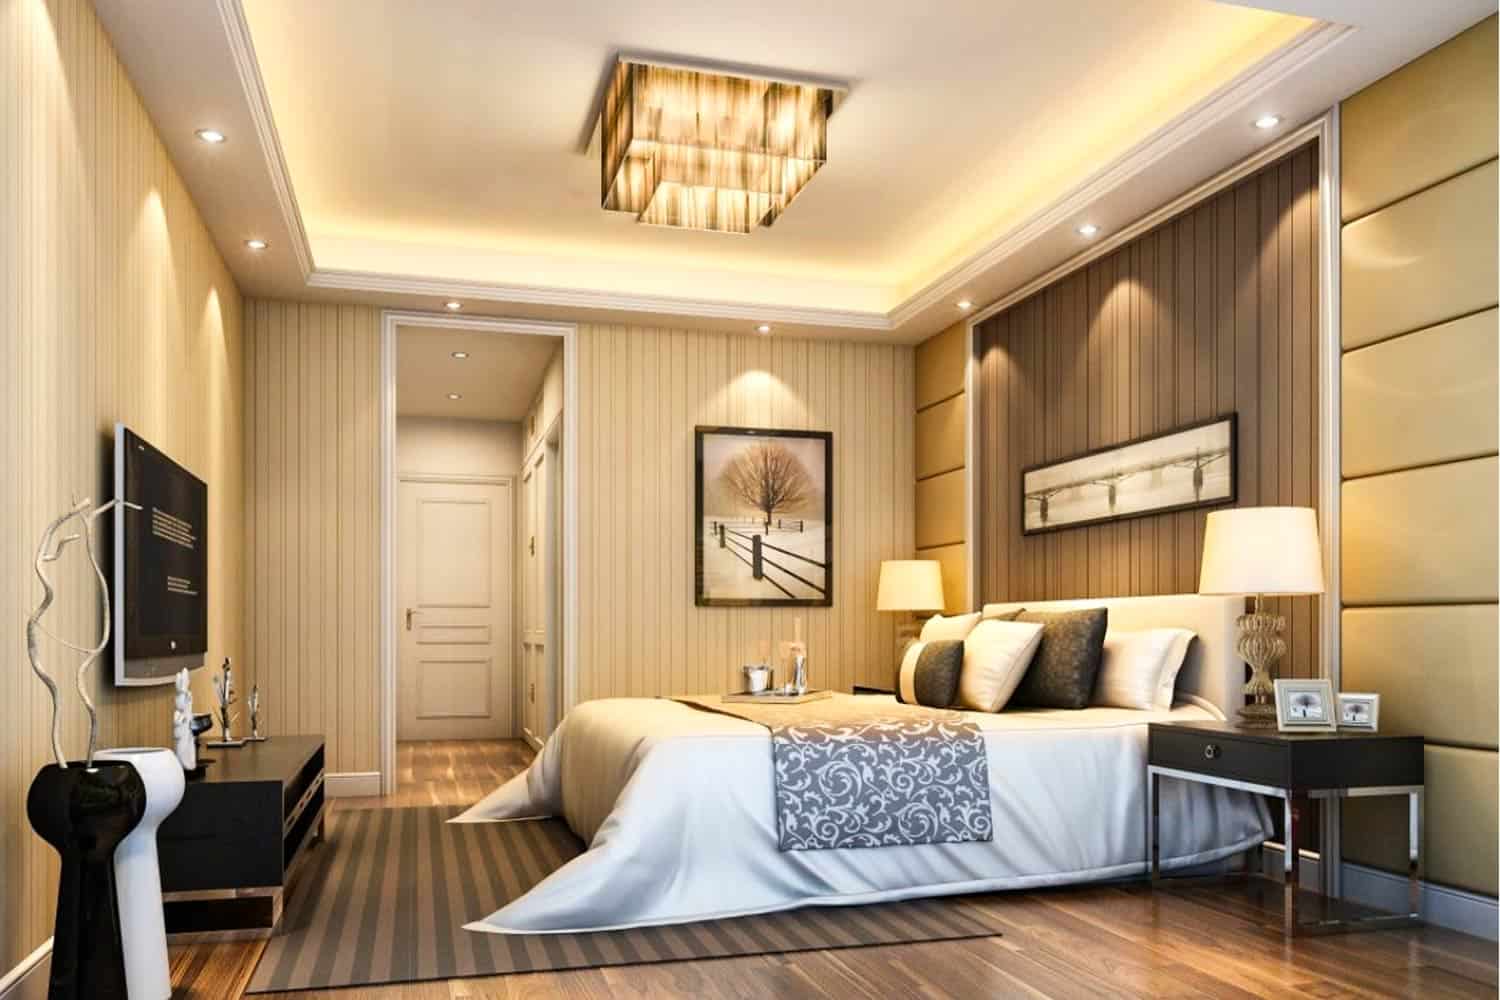 False Ceiling Design For Bedroom